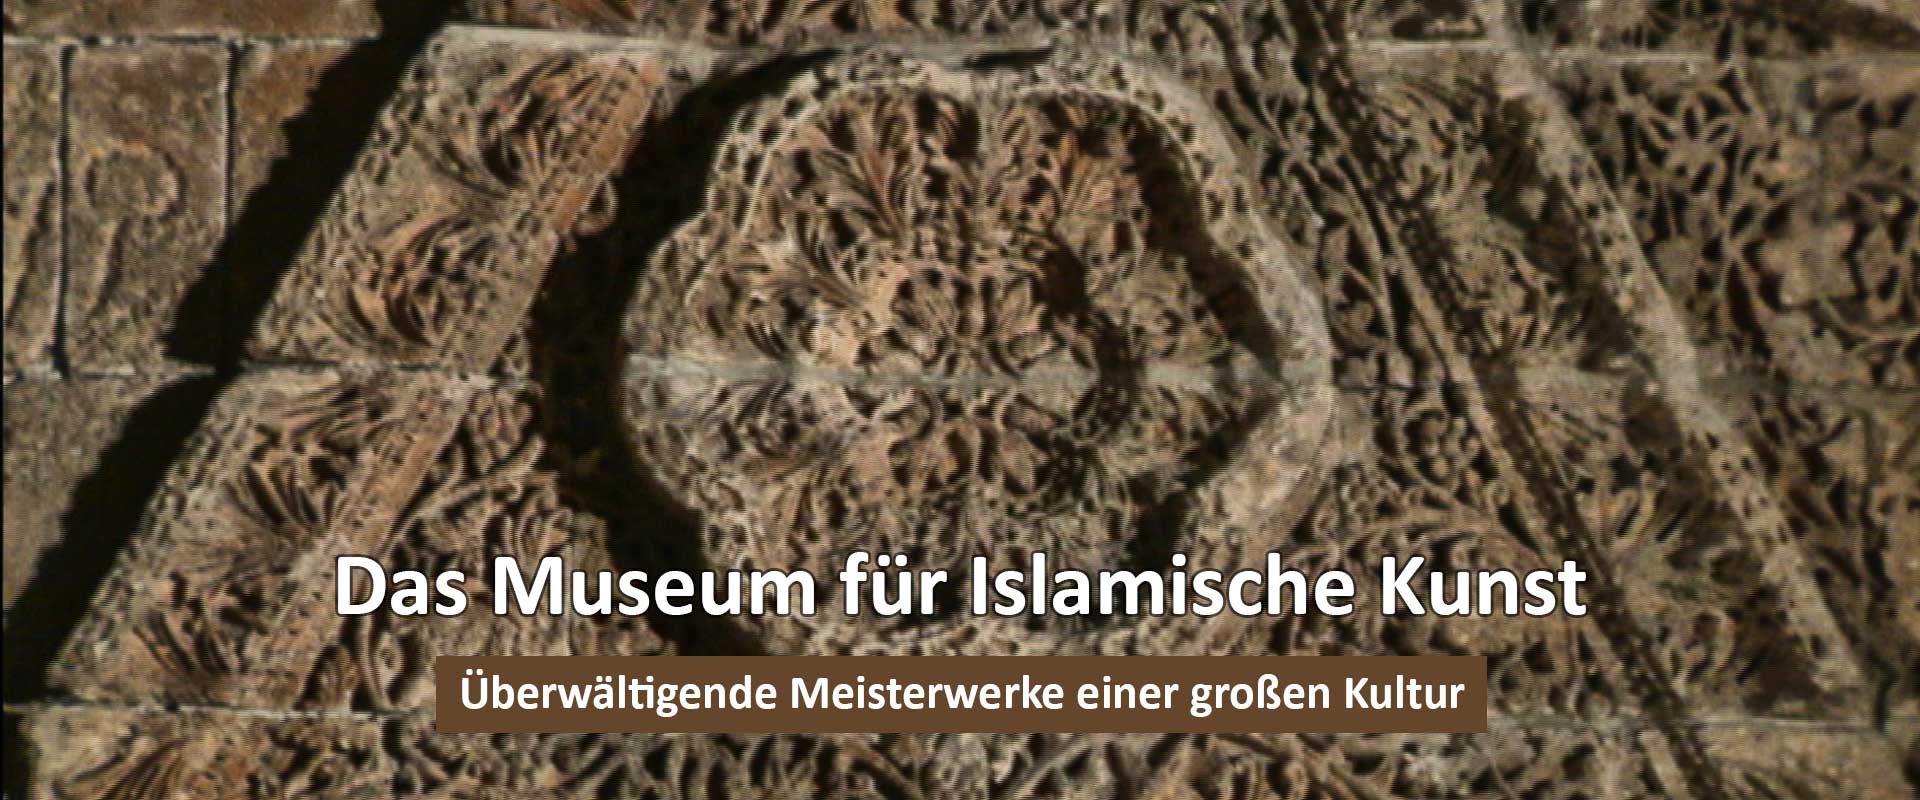 Das Museum für islamische Kunst